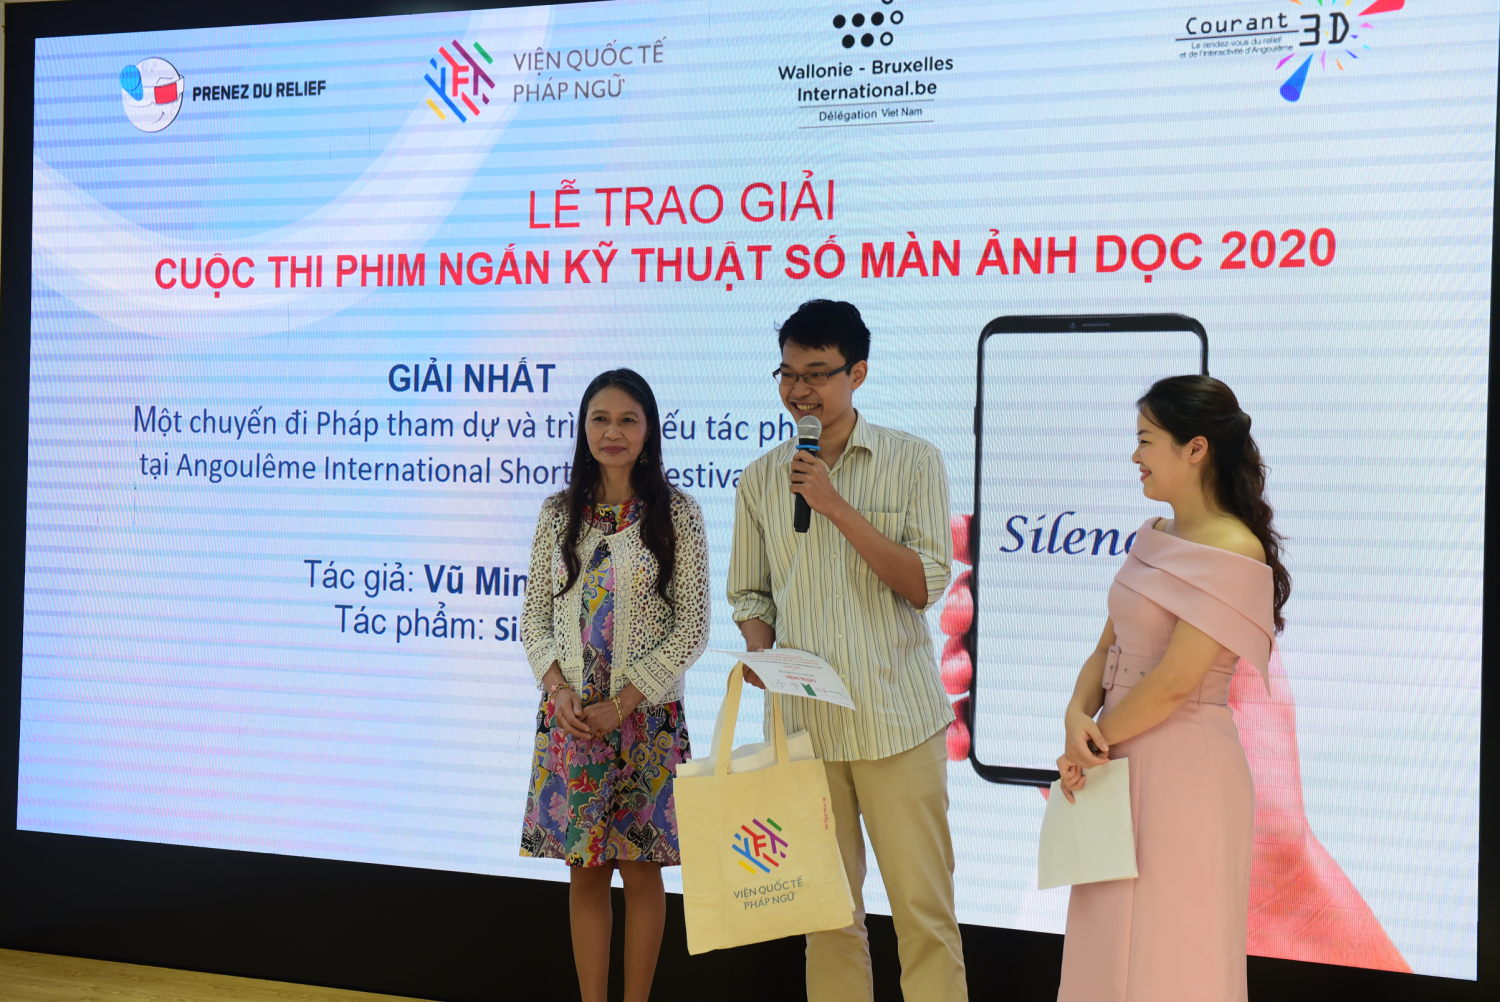 Tác giả Vũ Minh Đức giành giải Nhất cuộc thi năm nay với tác phẩm 'Silence'